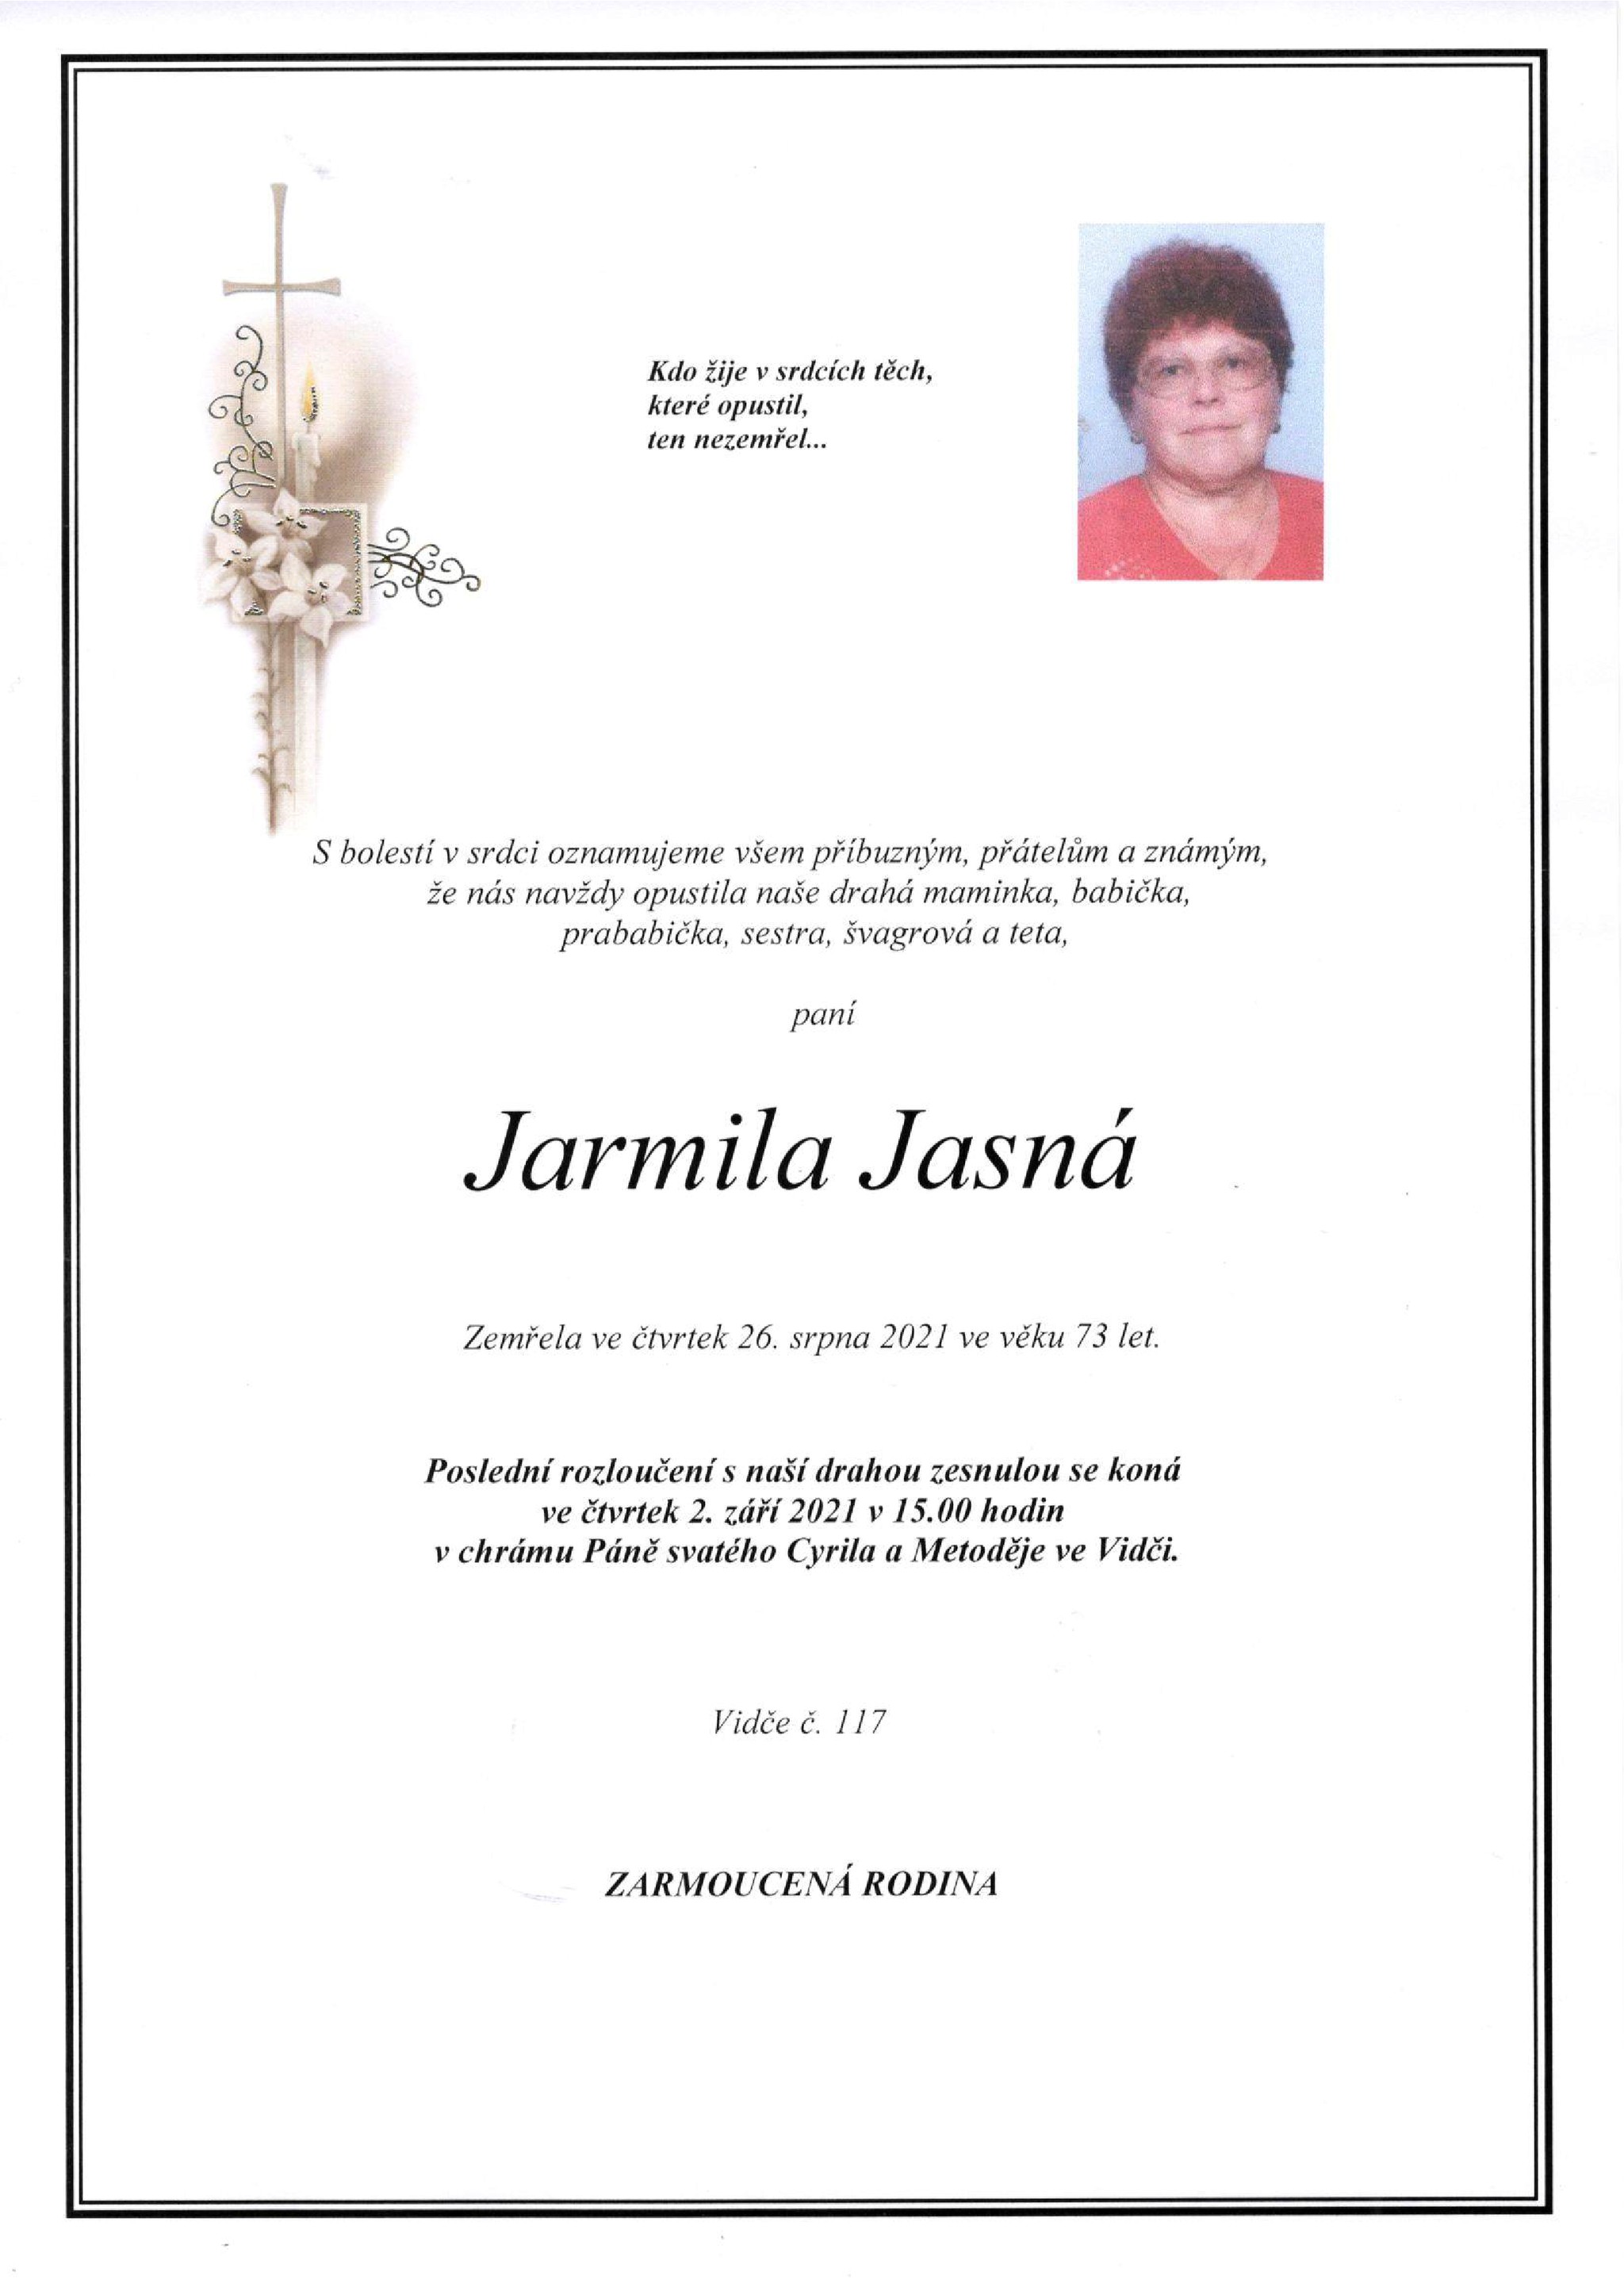 Jarmila Jasná